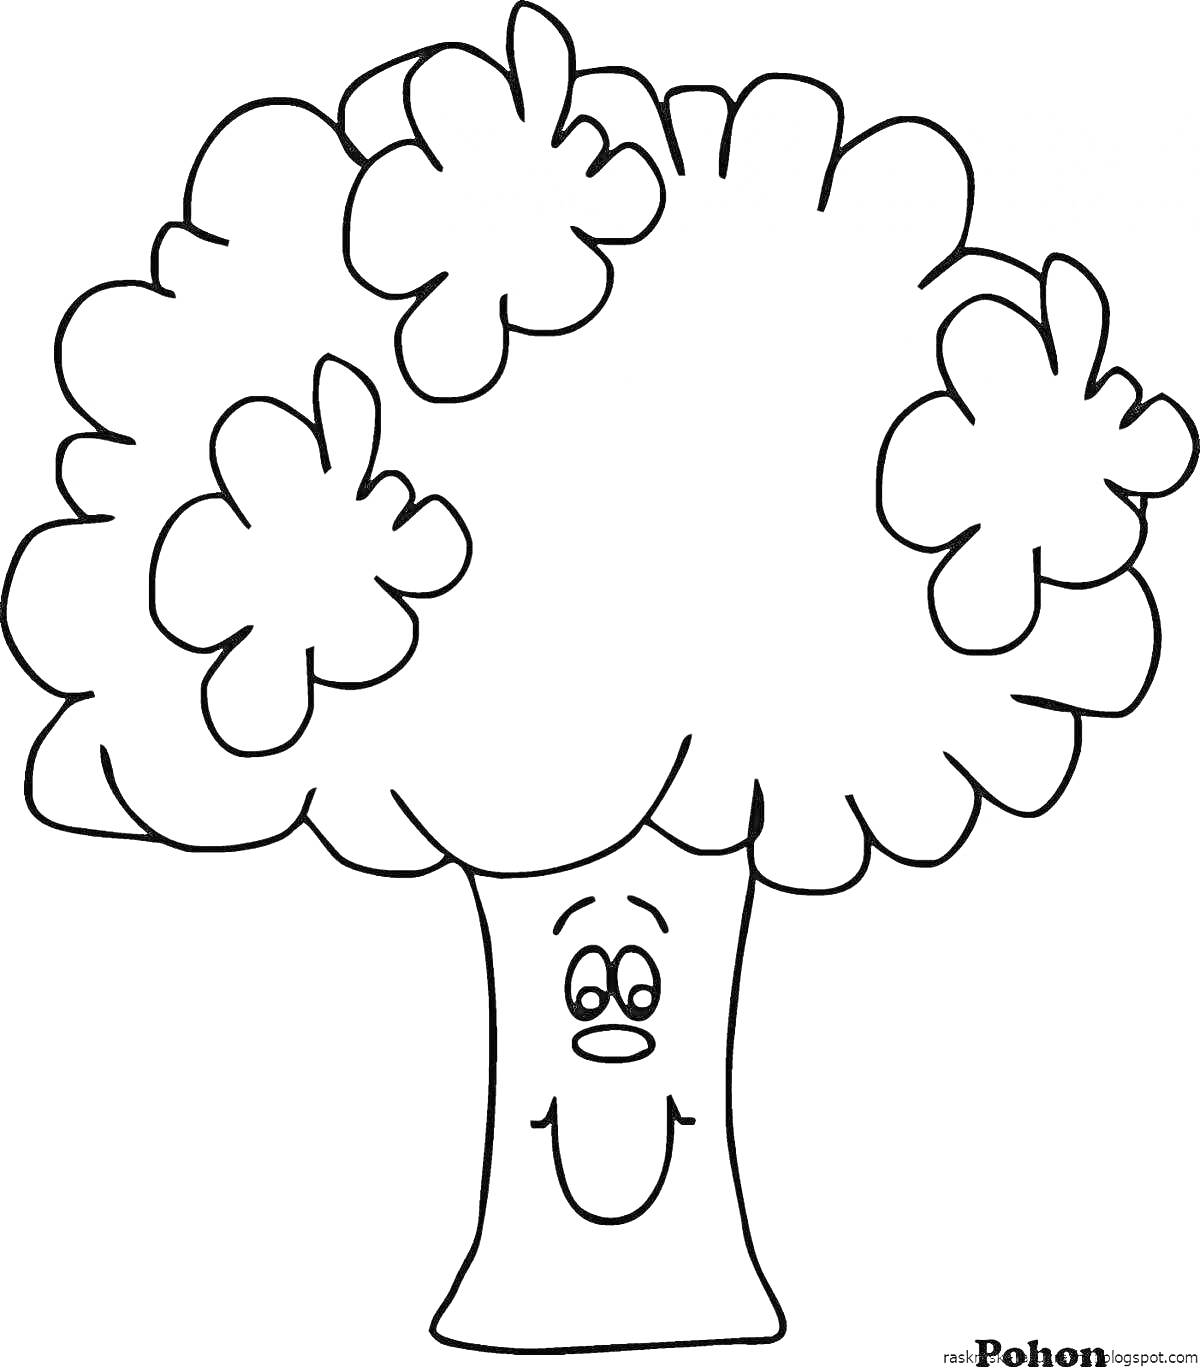 Весёлое дерево с кронами в форме облаков и лицом